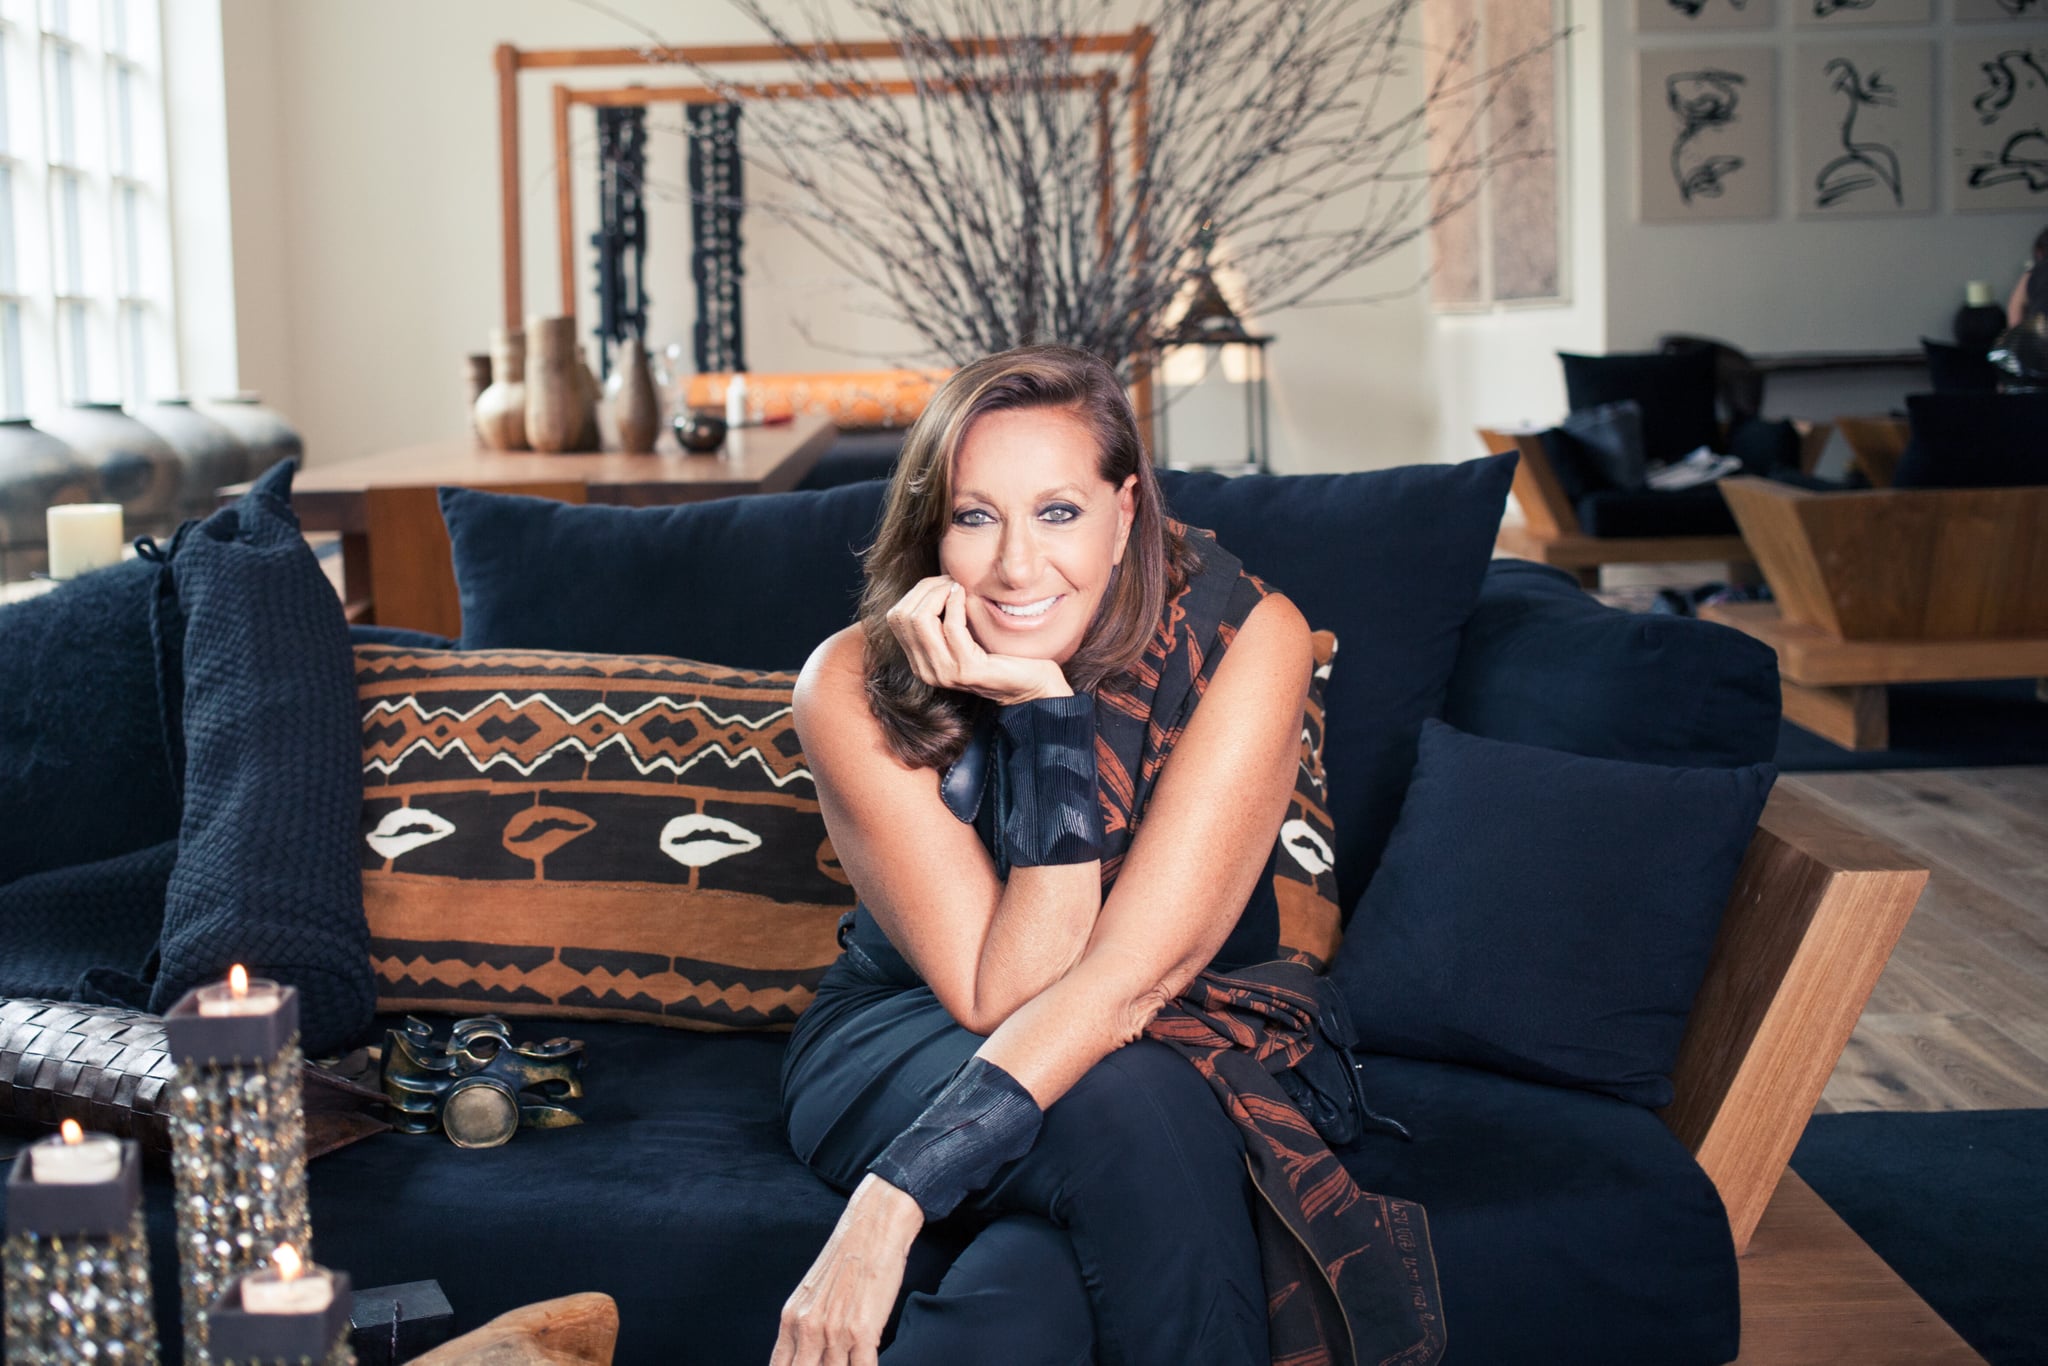 Donna Karan Interview 2015 | POPSUGAR Fashion